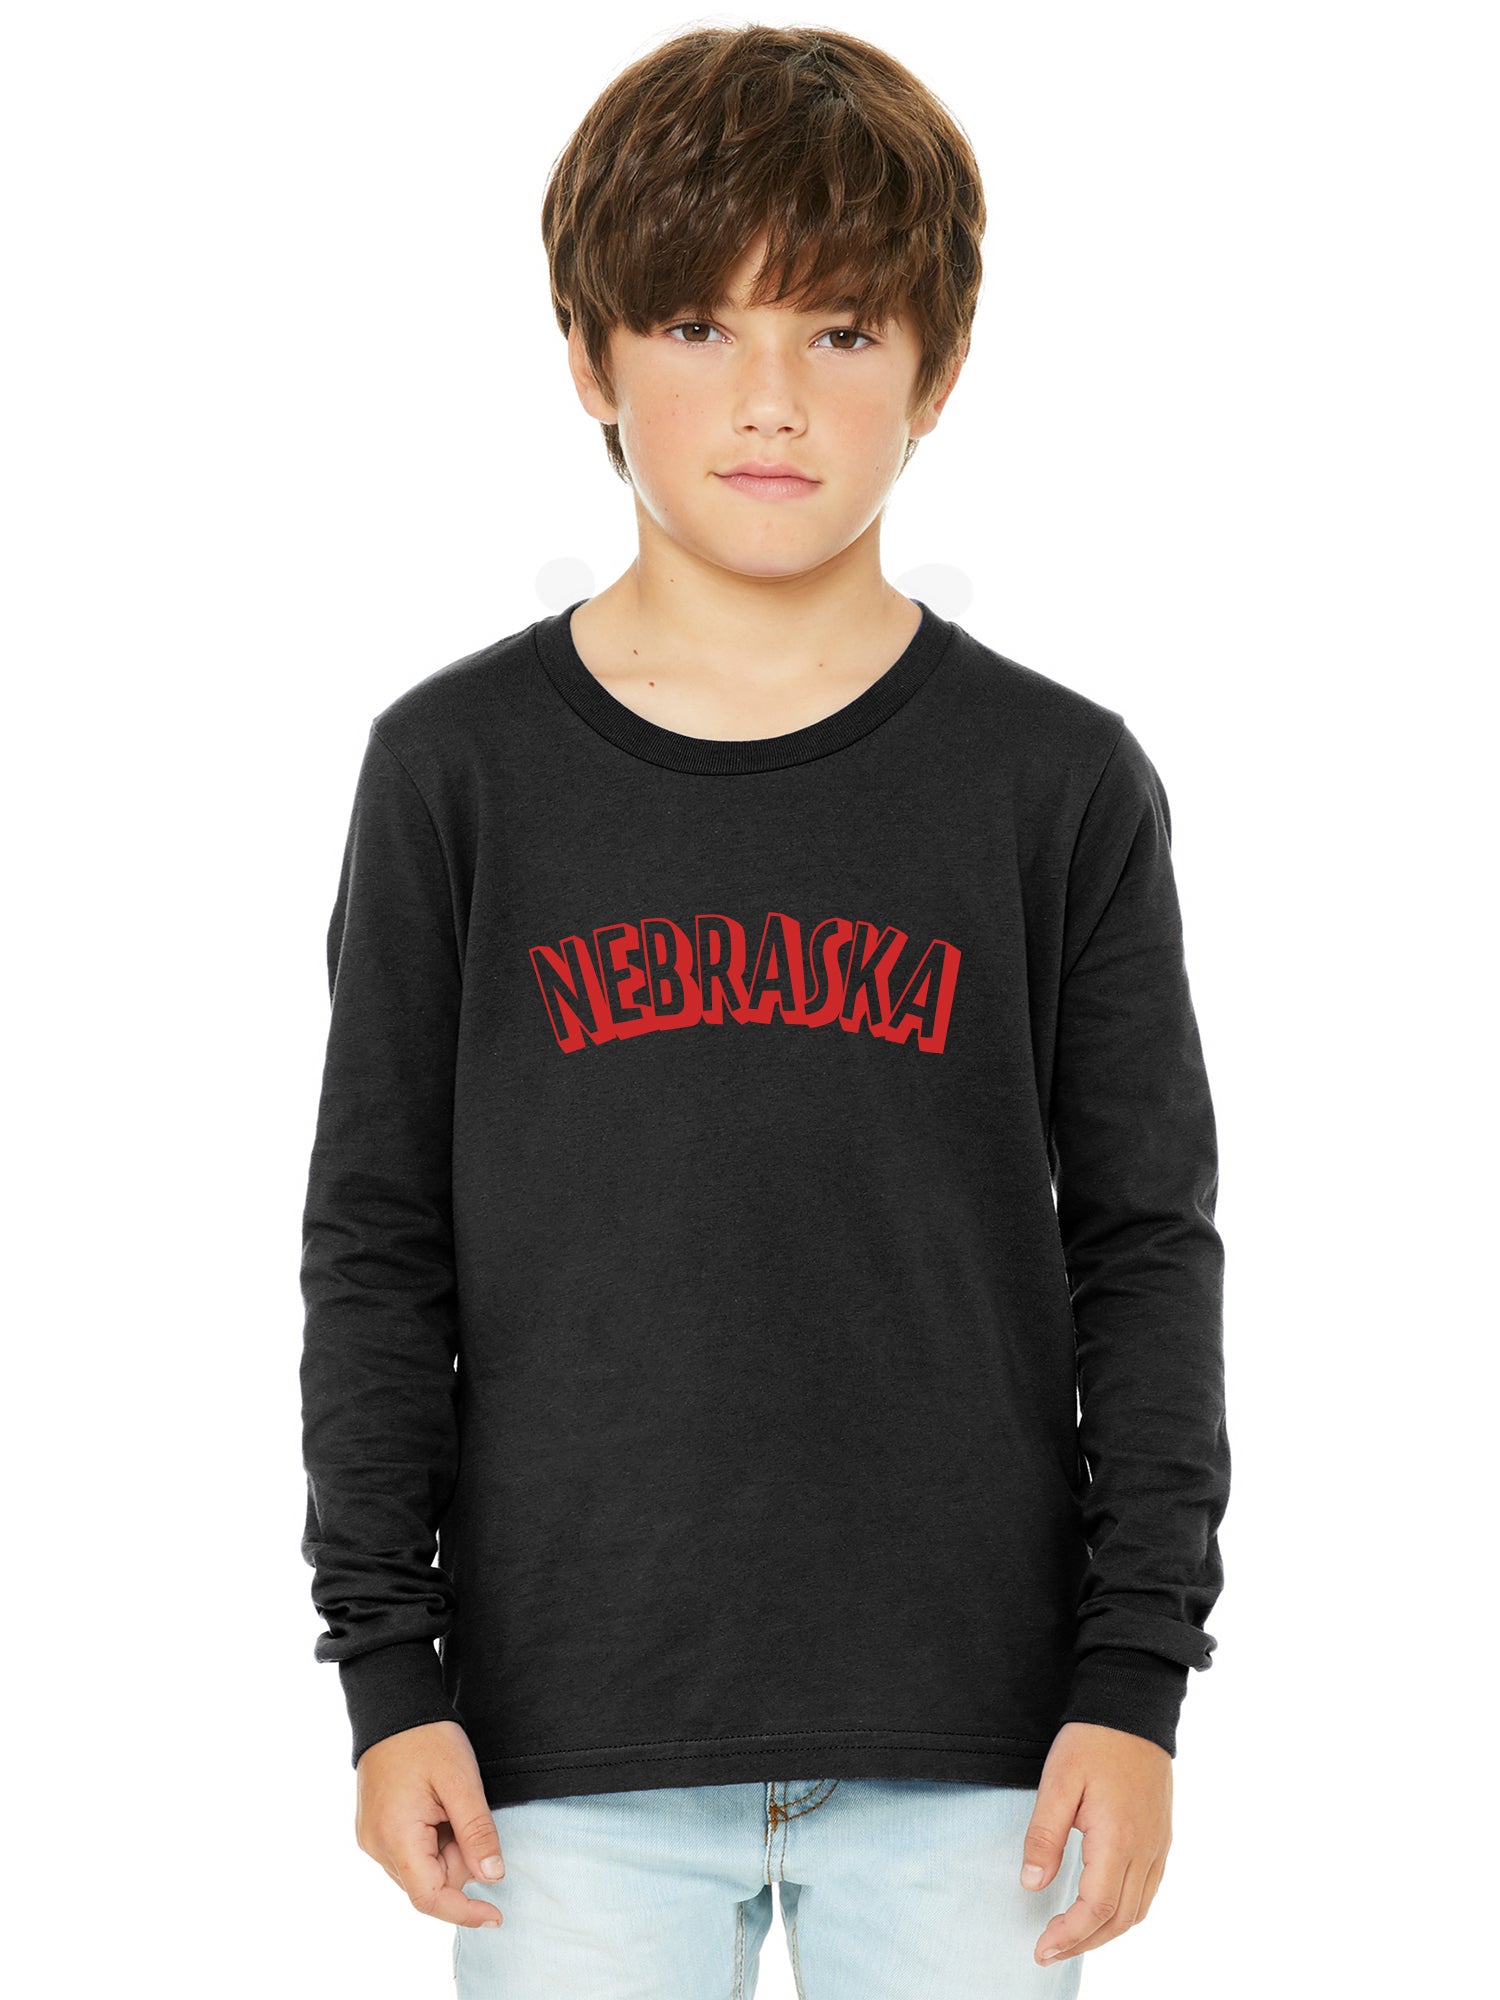 Nebraska Clothing